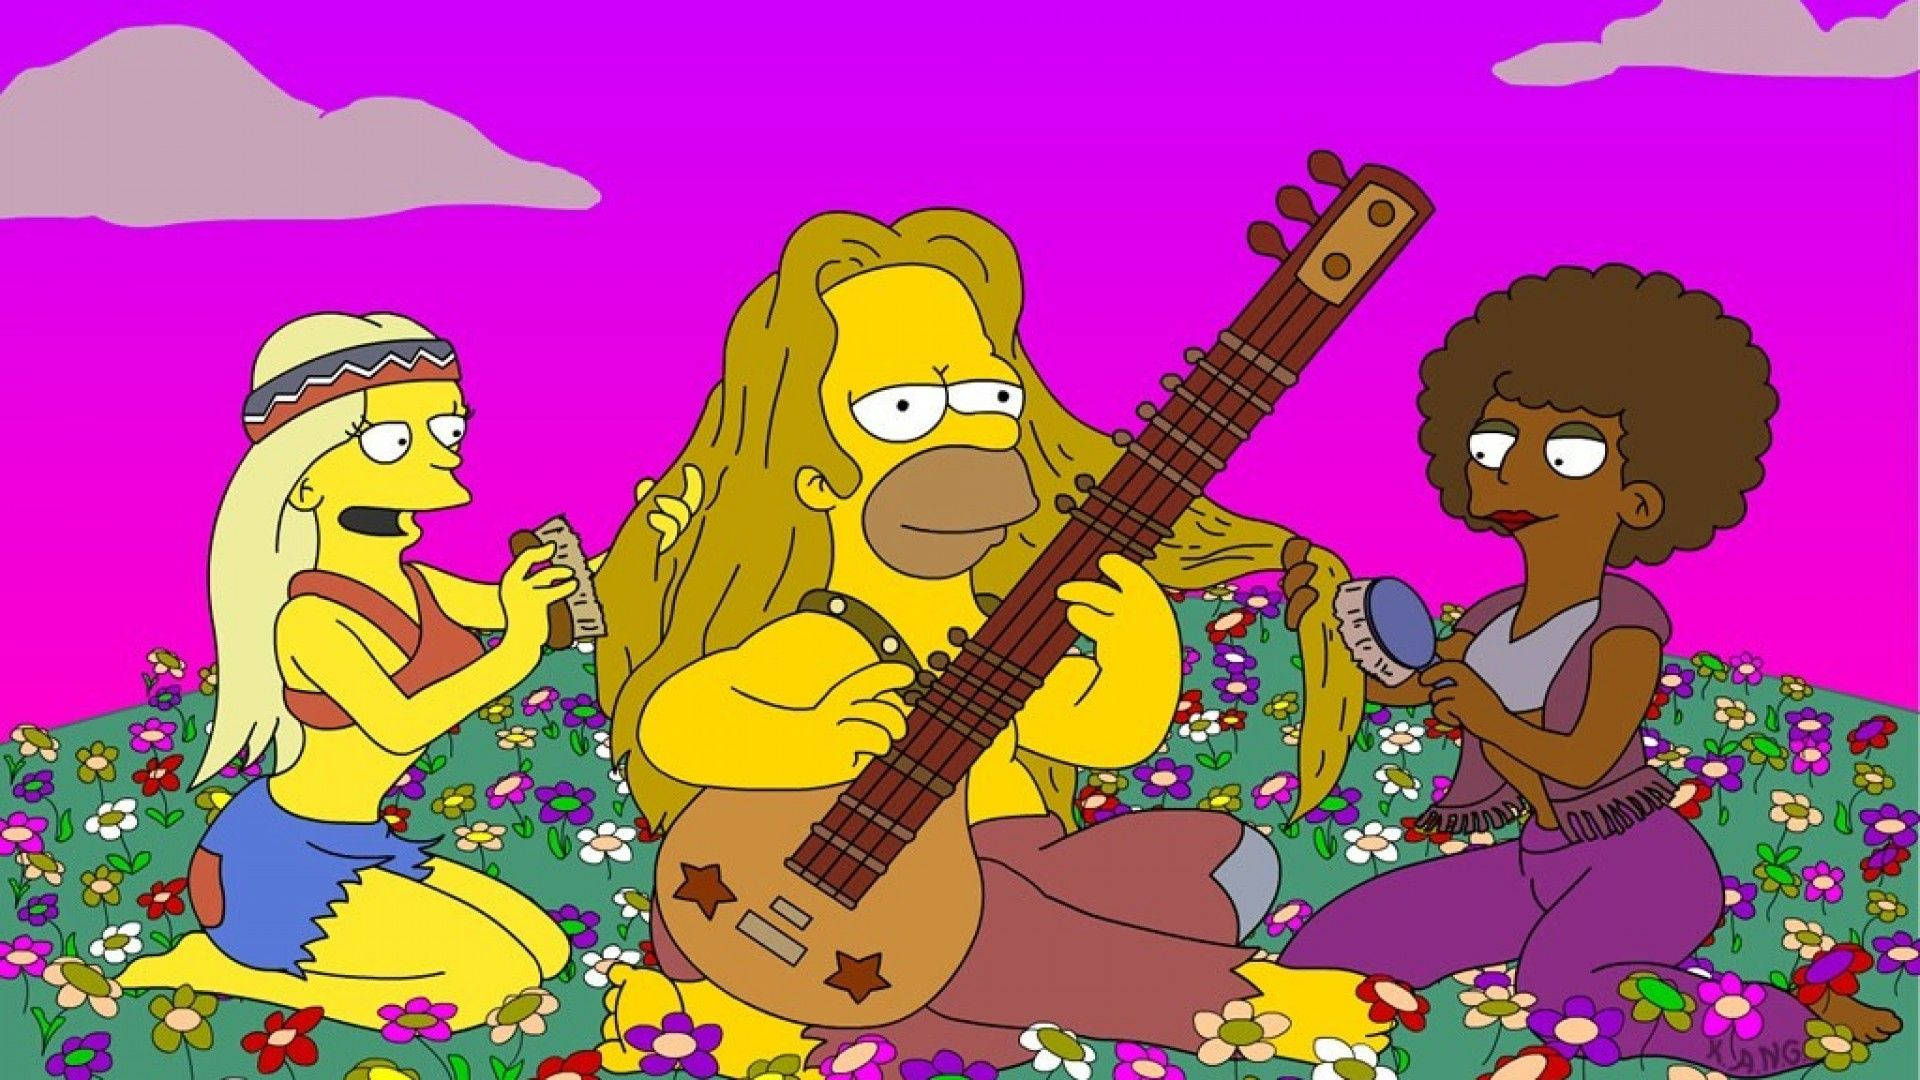 Portátilcon Estética Hippie De Los Simpsons Fondo de pantalla